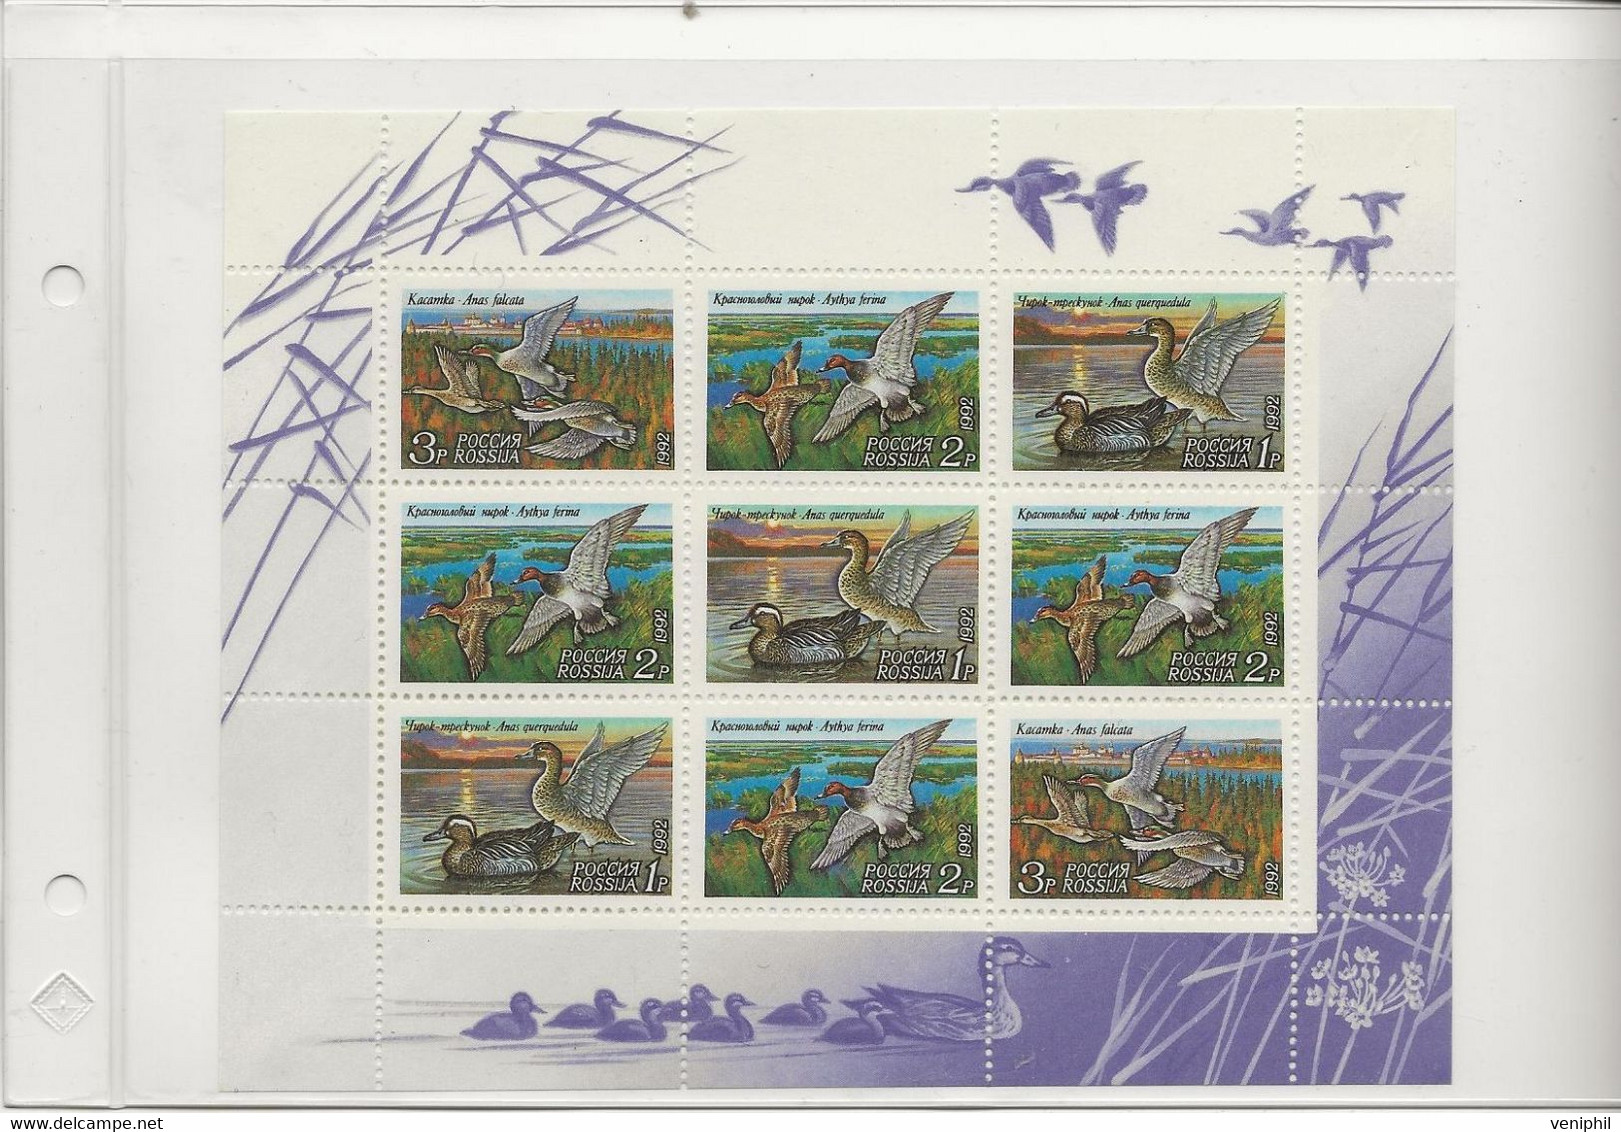 RUSSIE - CANARDS - N° 5958 A 5960 EN FEUILLET -ANNEE 1992 - Blokken & Velletjes